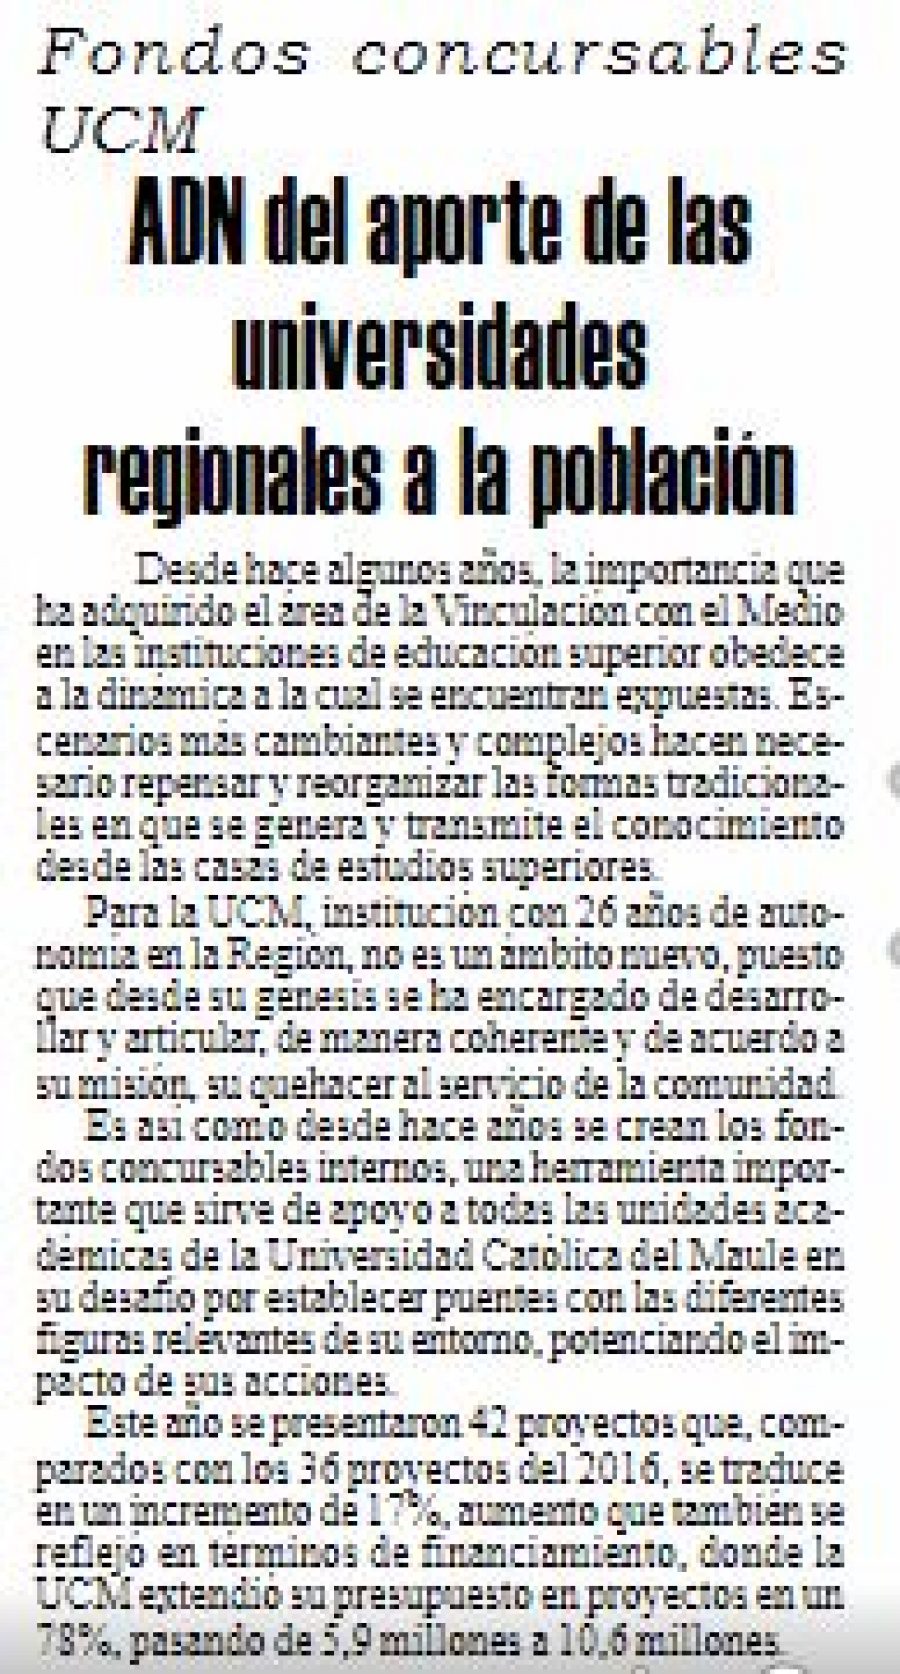 13 de julio en Diario El Heraldo: “ADN del aporte de las universidades regionales a la población”